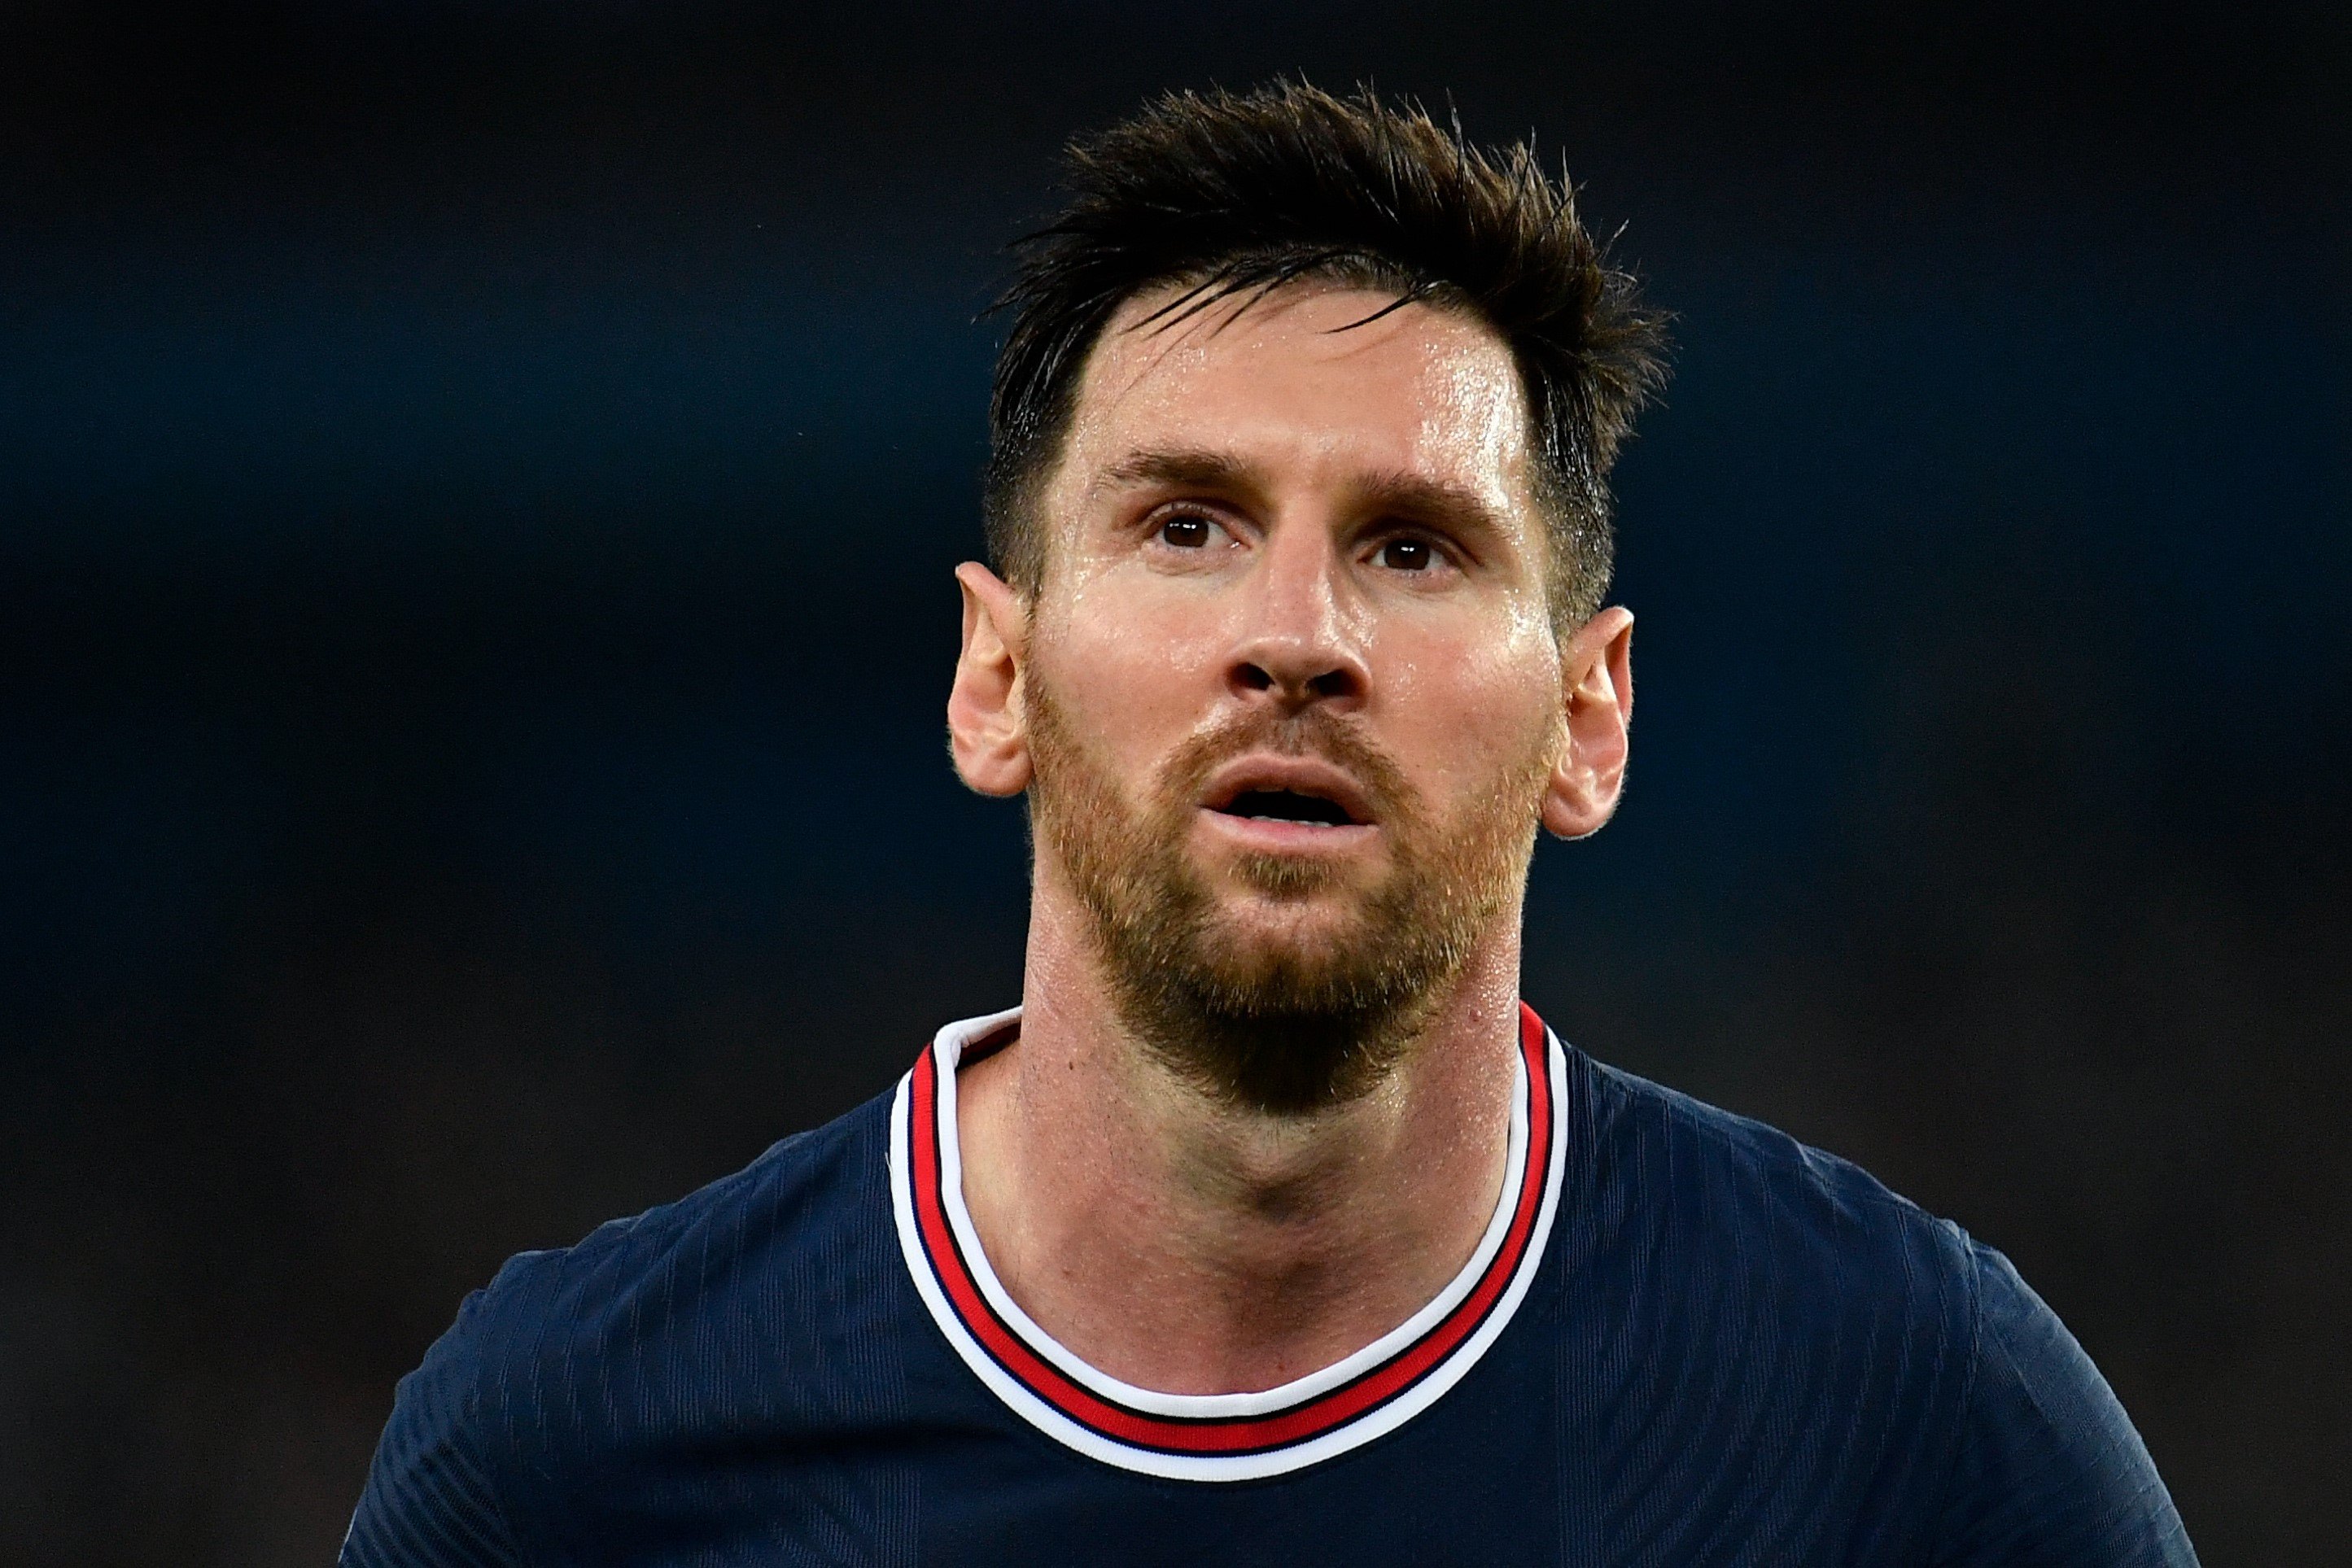 Messi no tiene piedad del Barça en una entrevista para France Football que hará mucho daño al barcelonismo